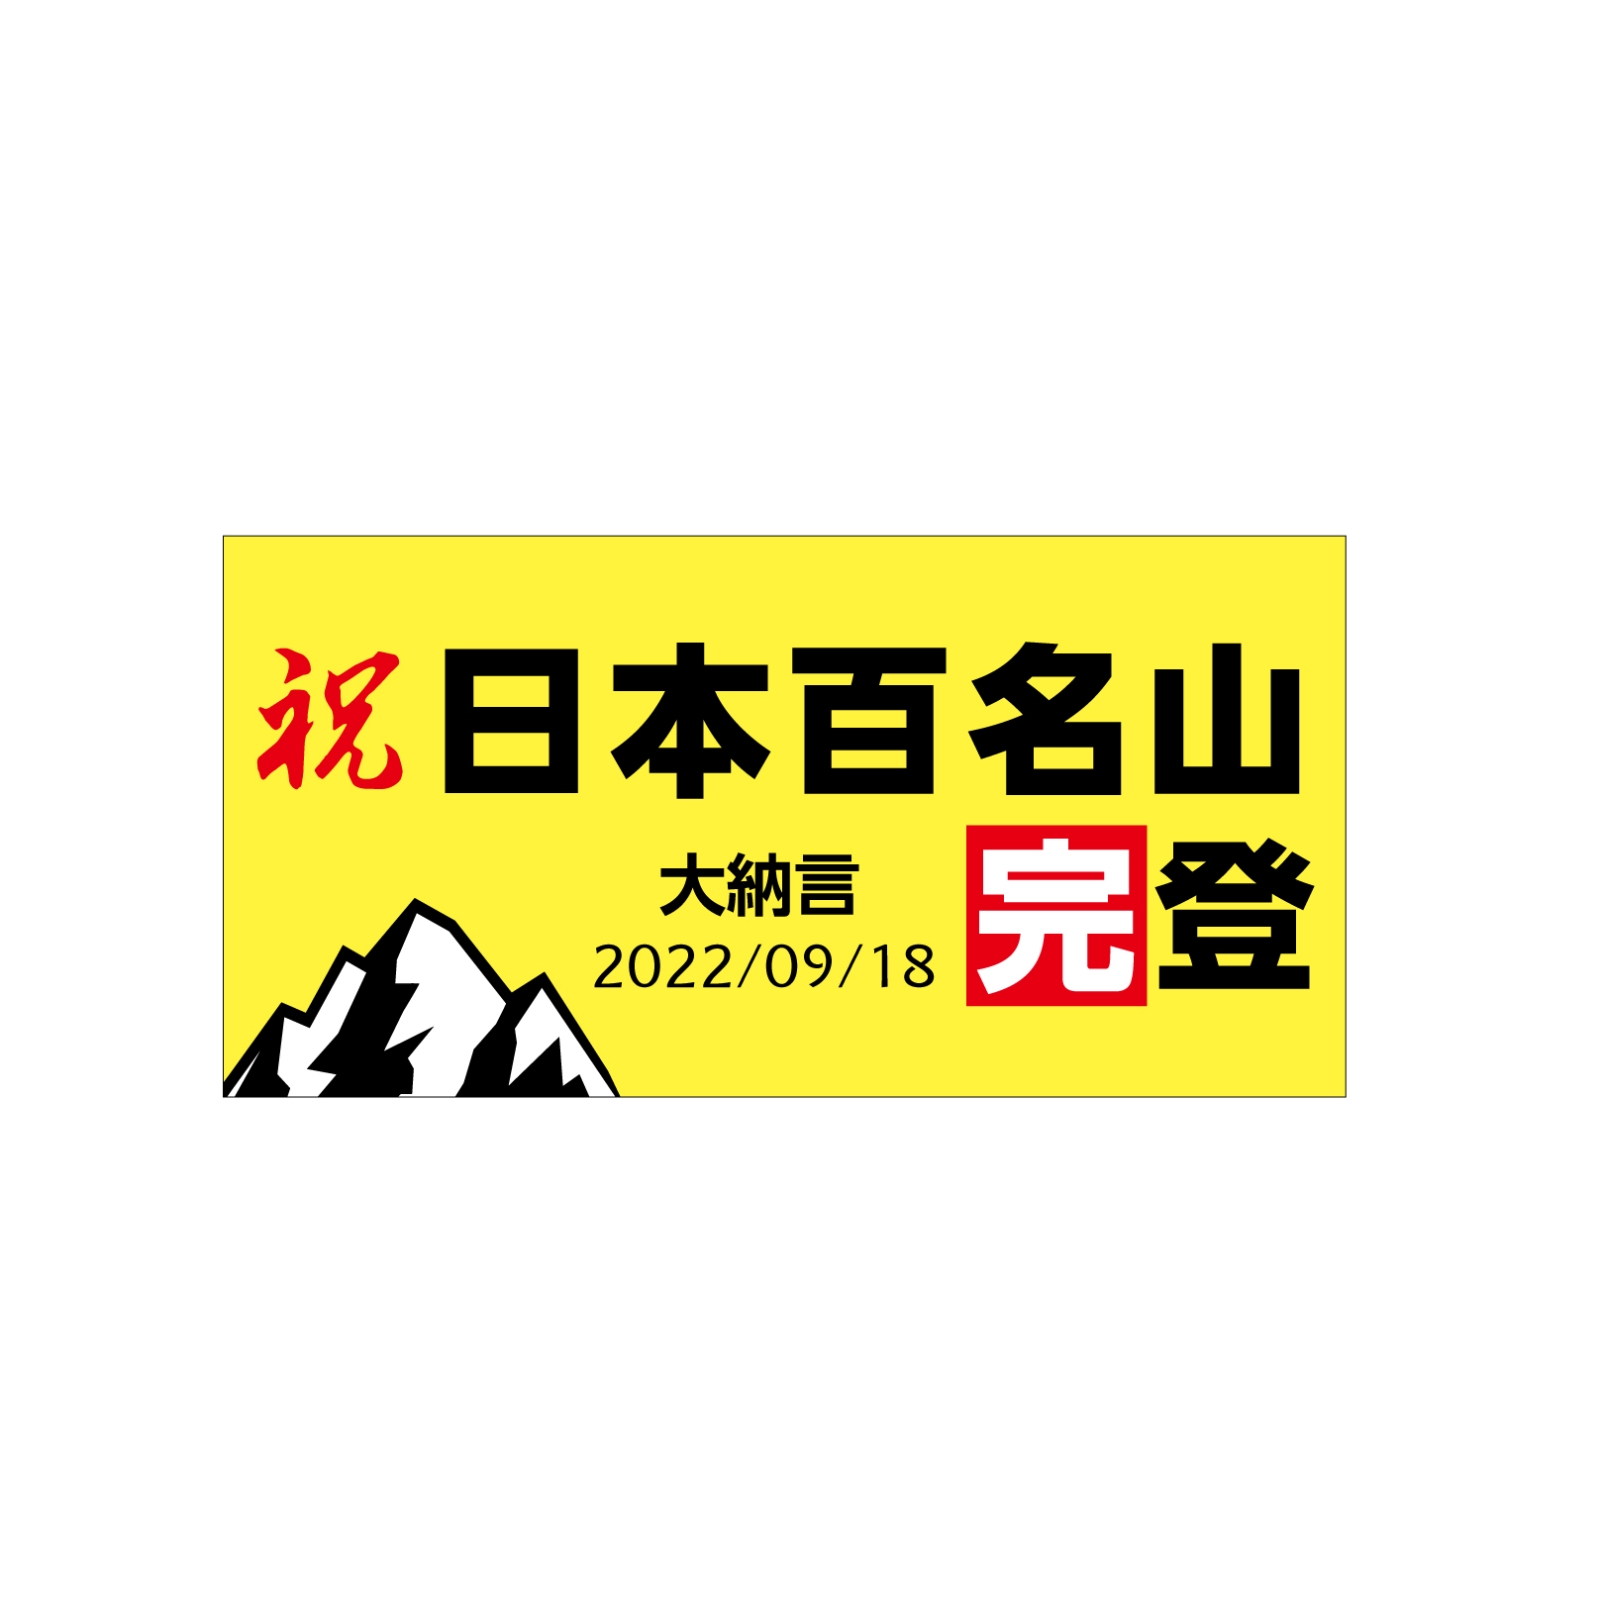 日本百名山完登のタオル